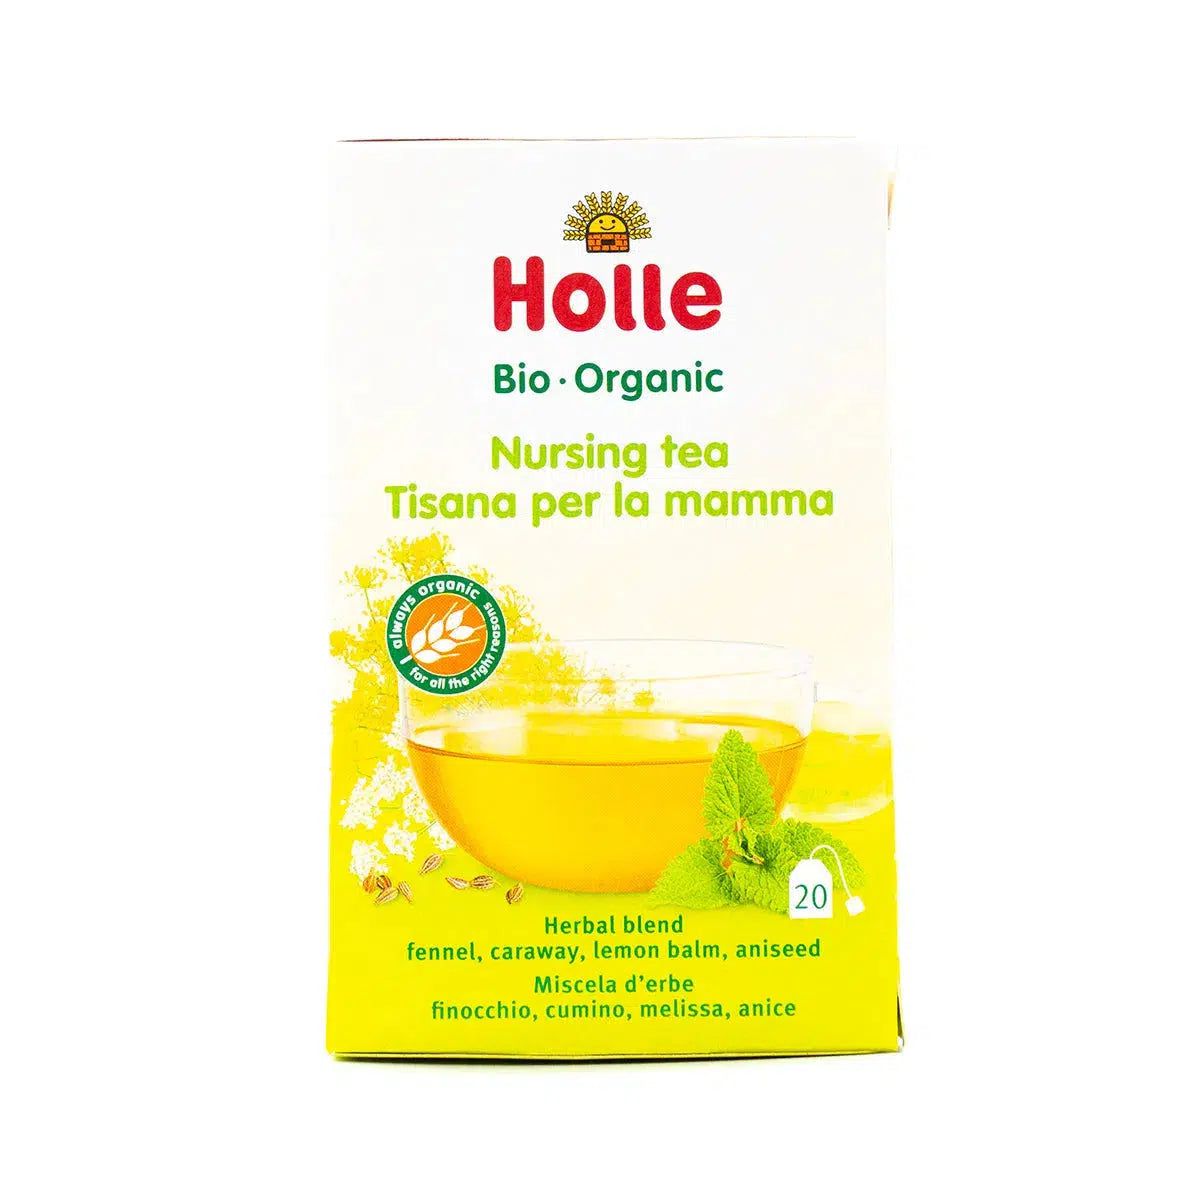 Holle Organic Nursing Tea (20 tea bags) | Organic Tea